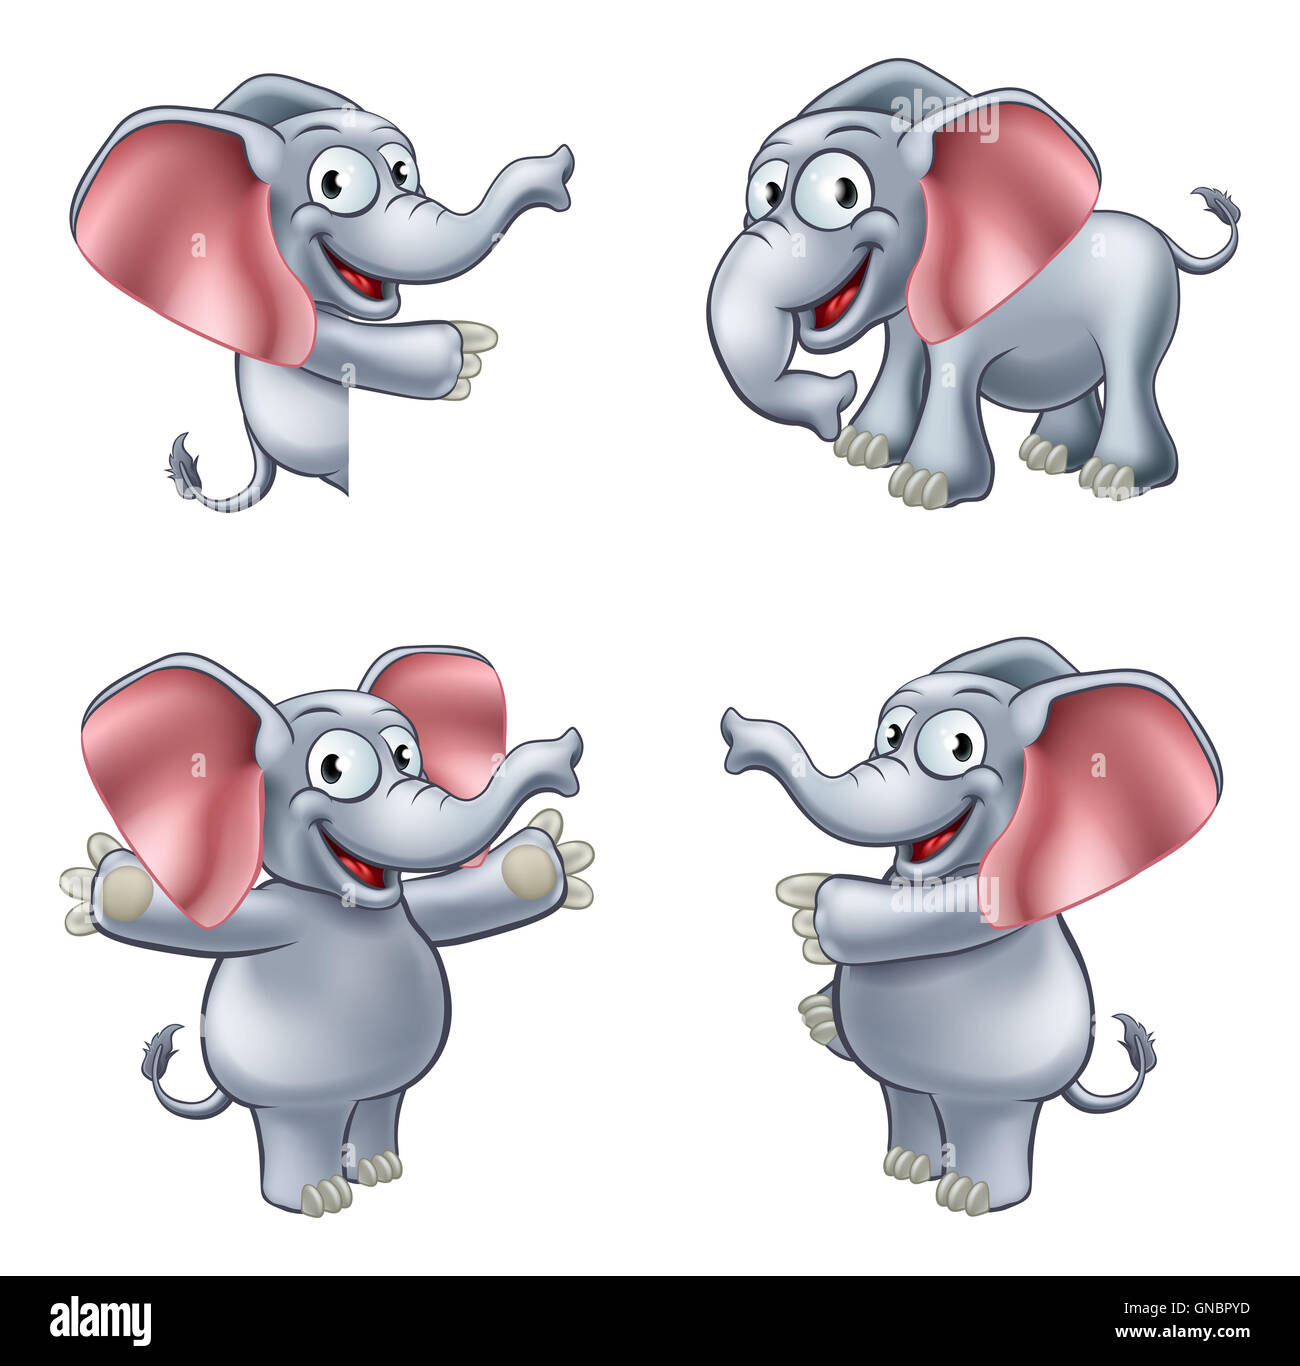 Un éléphant sympathique mascotte cartoon character dans diverses poses Banque D'Images